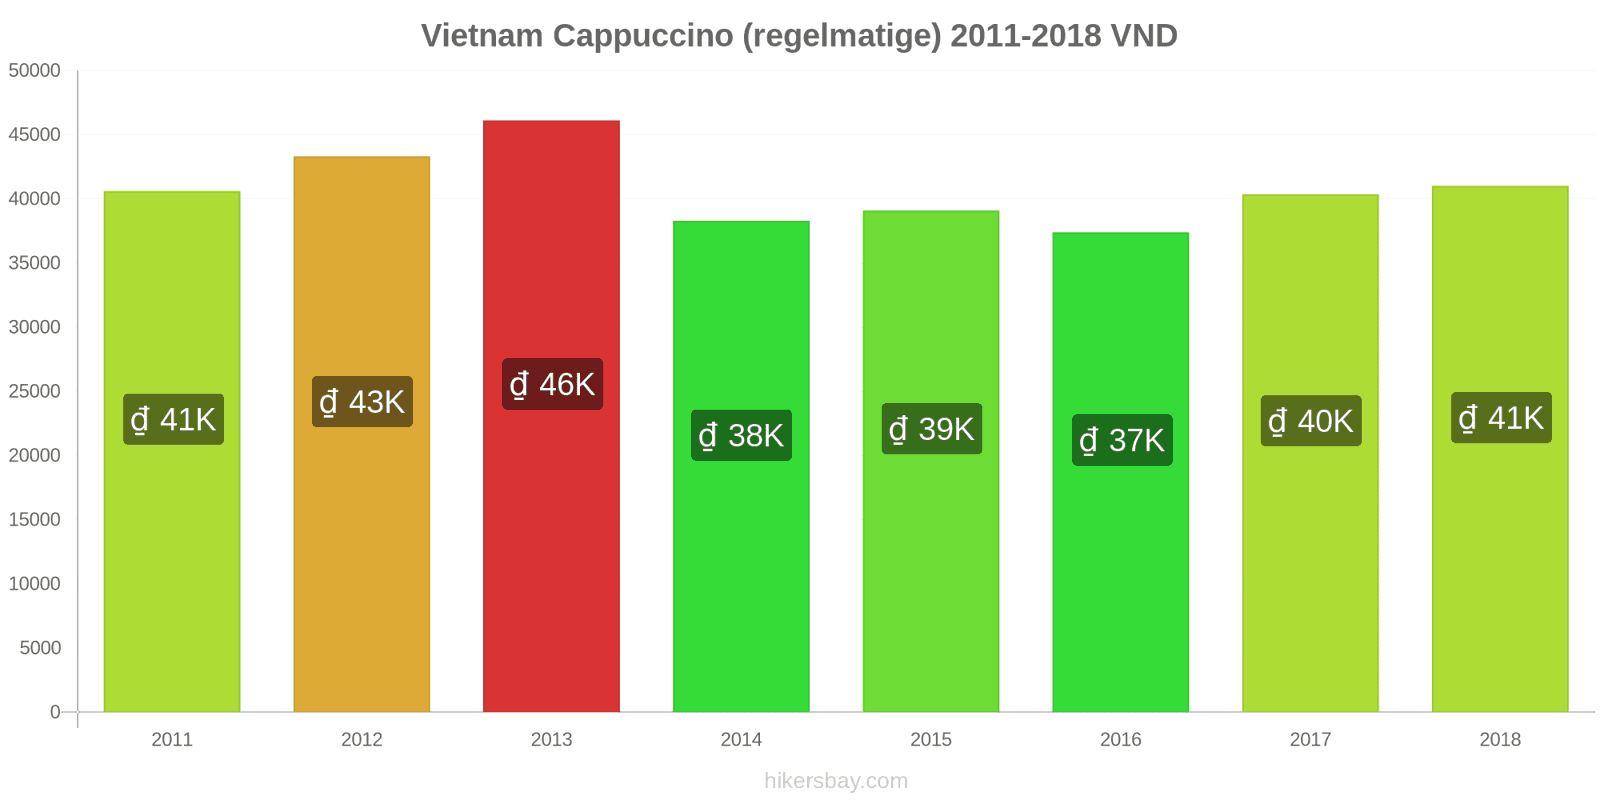 Vietnam prijswijzigingen Cappuccino hikersbay.com